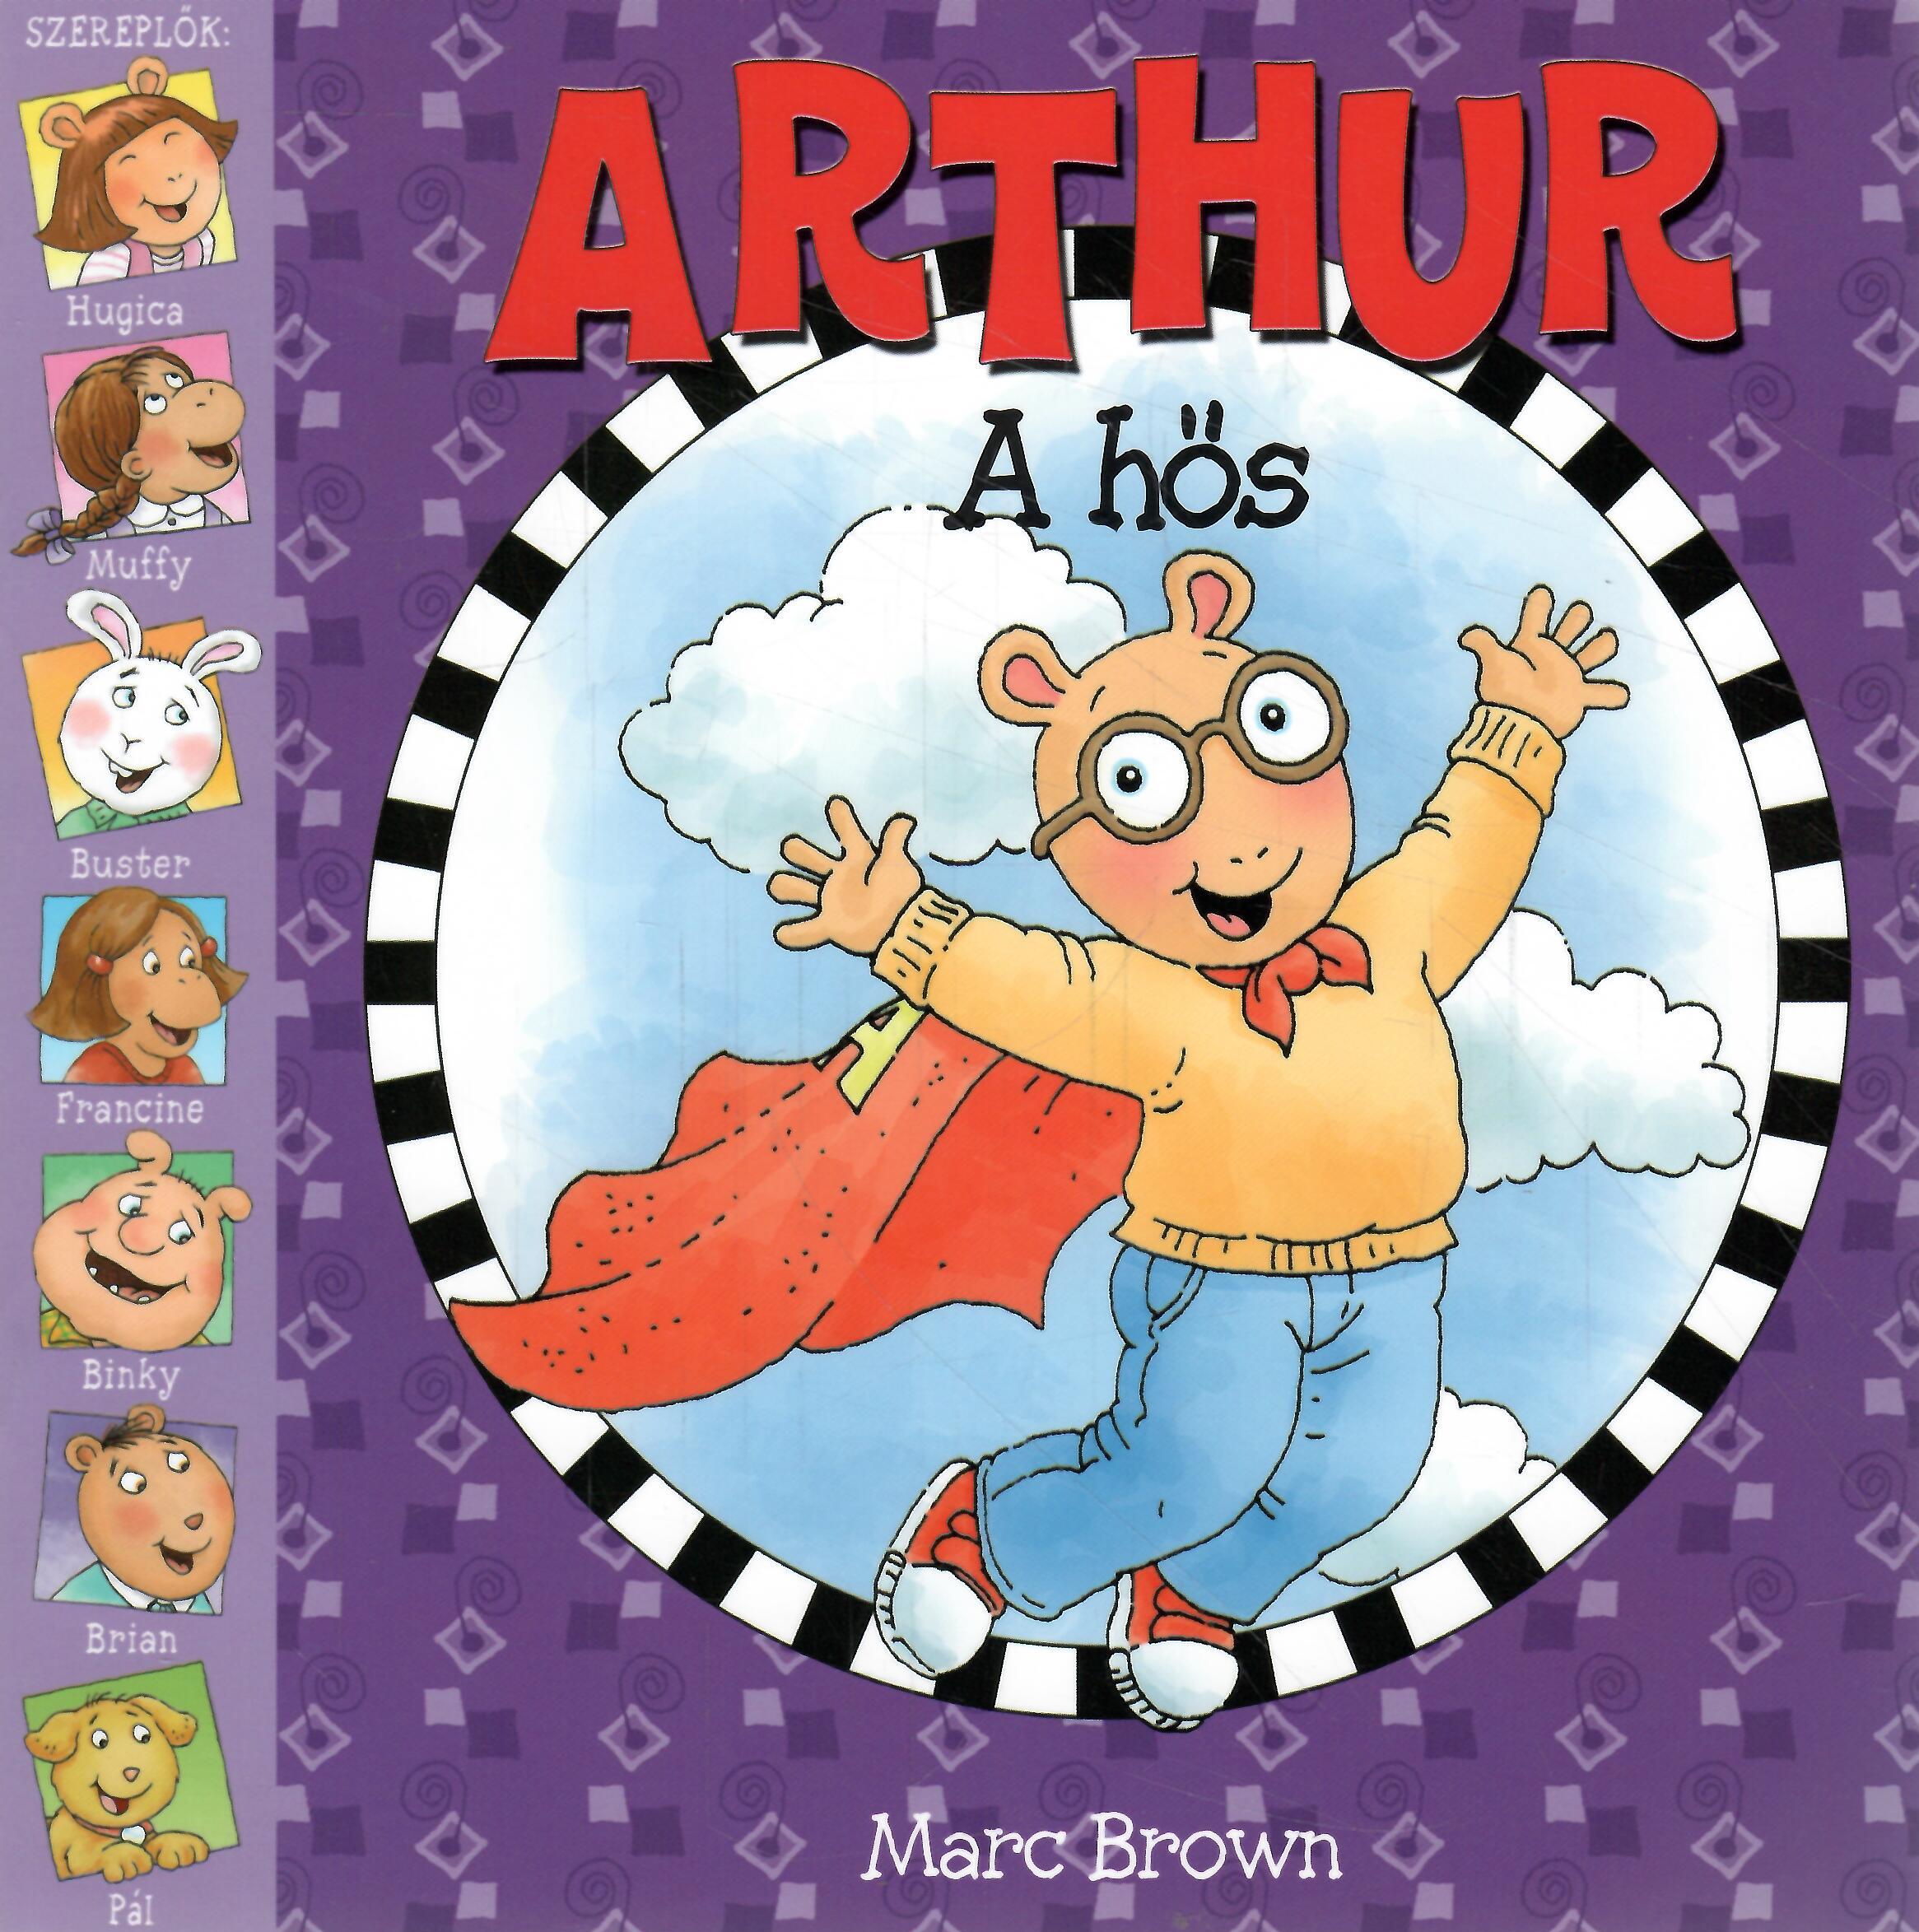 Arthur a hős